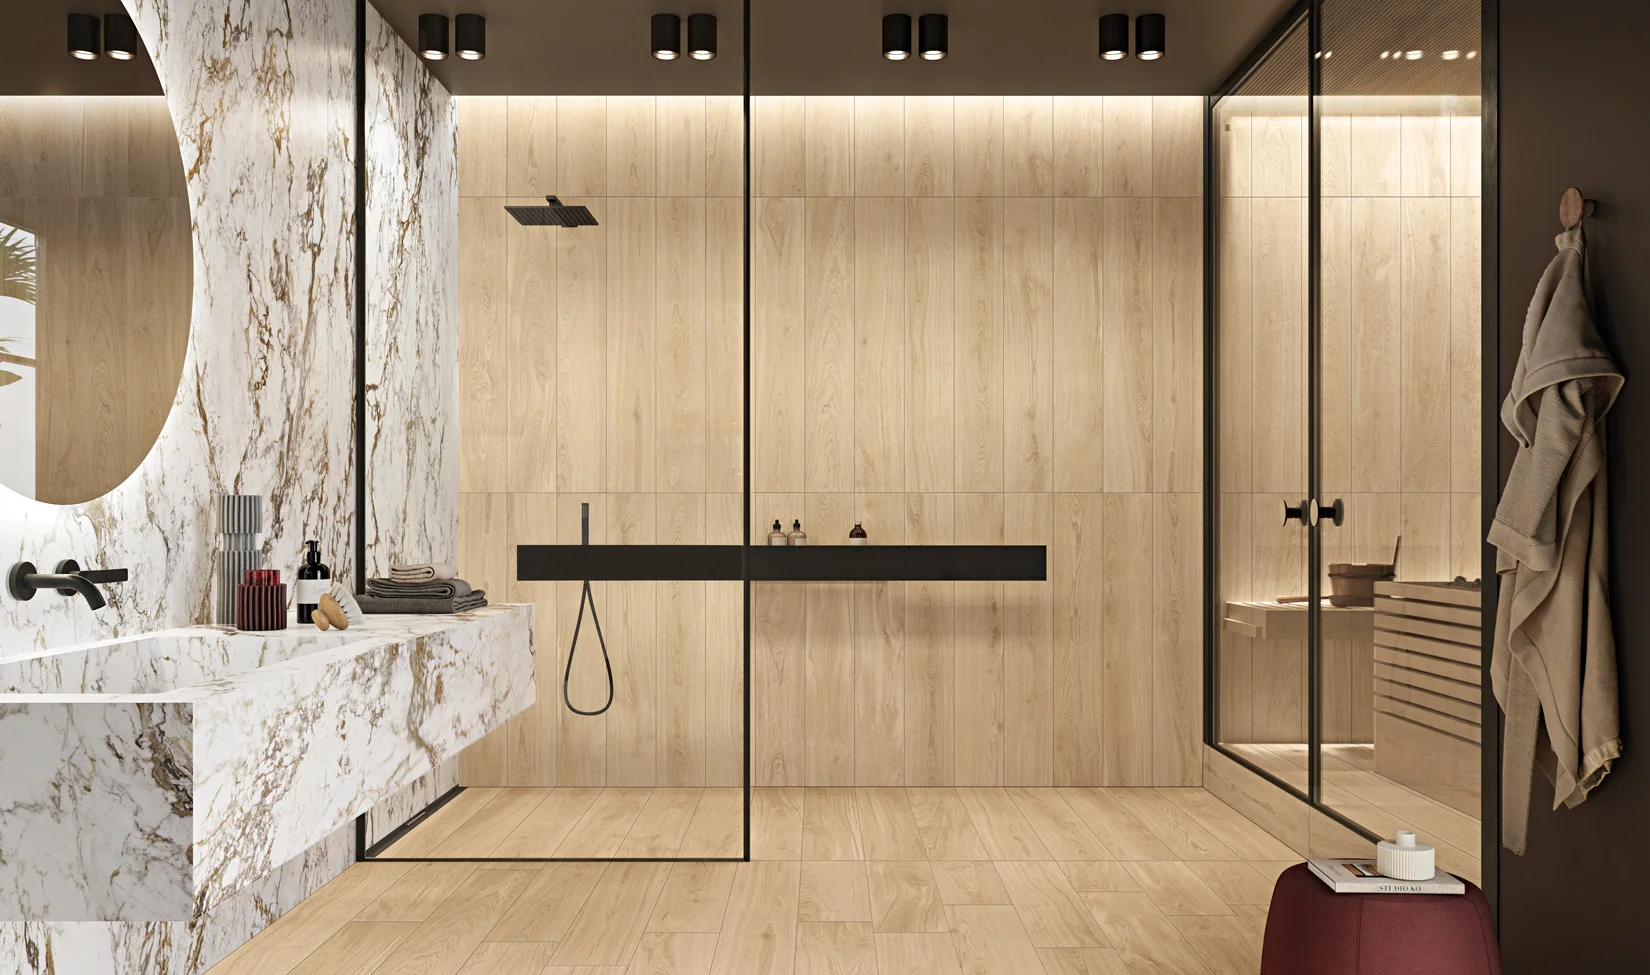 Bagno di design con pavimento e rivestimenti in gres porcellanato effetto legno, lavabo in marmo e doccia moderna.